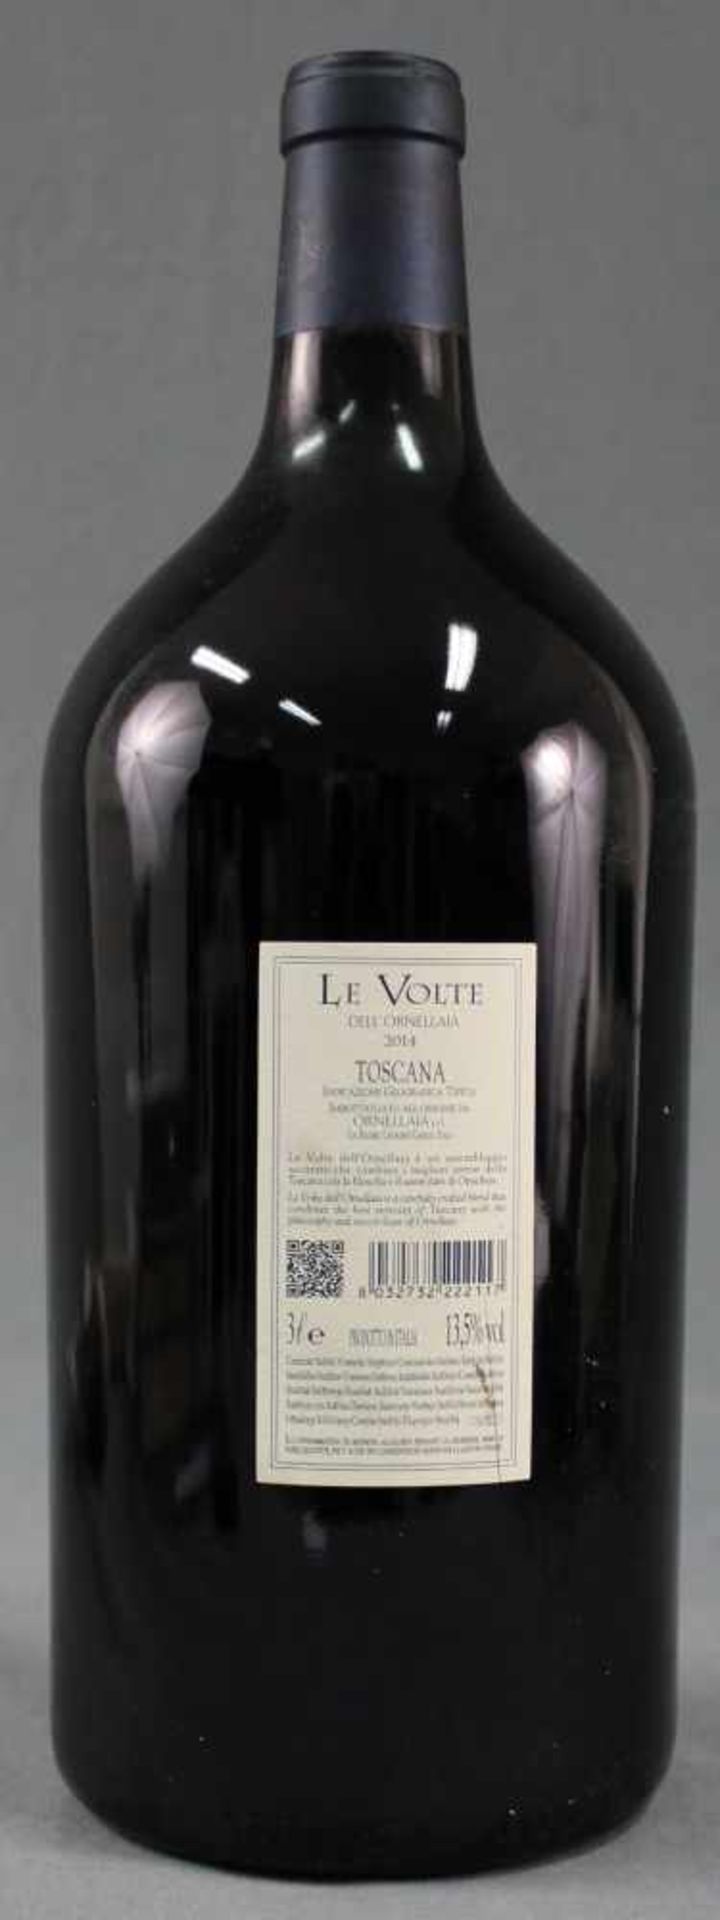 2014 Le Volte Dell' Ornellaia. Toscana IGT. Doppelmagnum.Eine Flasche Doppelmagnum 3 Liter, 13,5% - Bild 3 aus 8